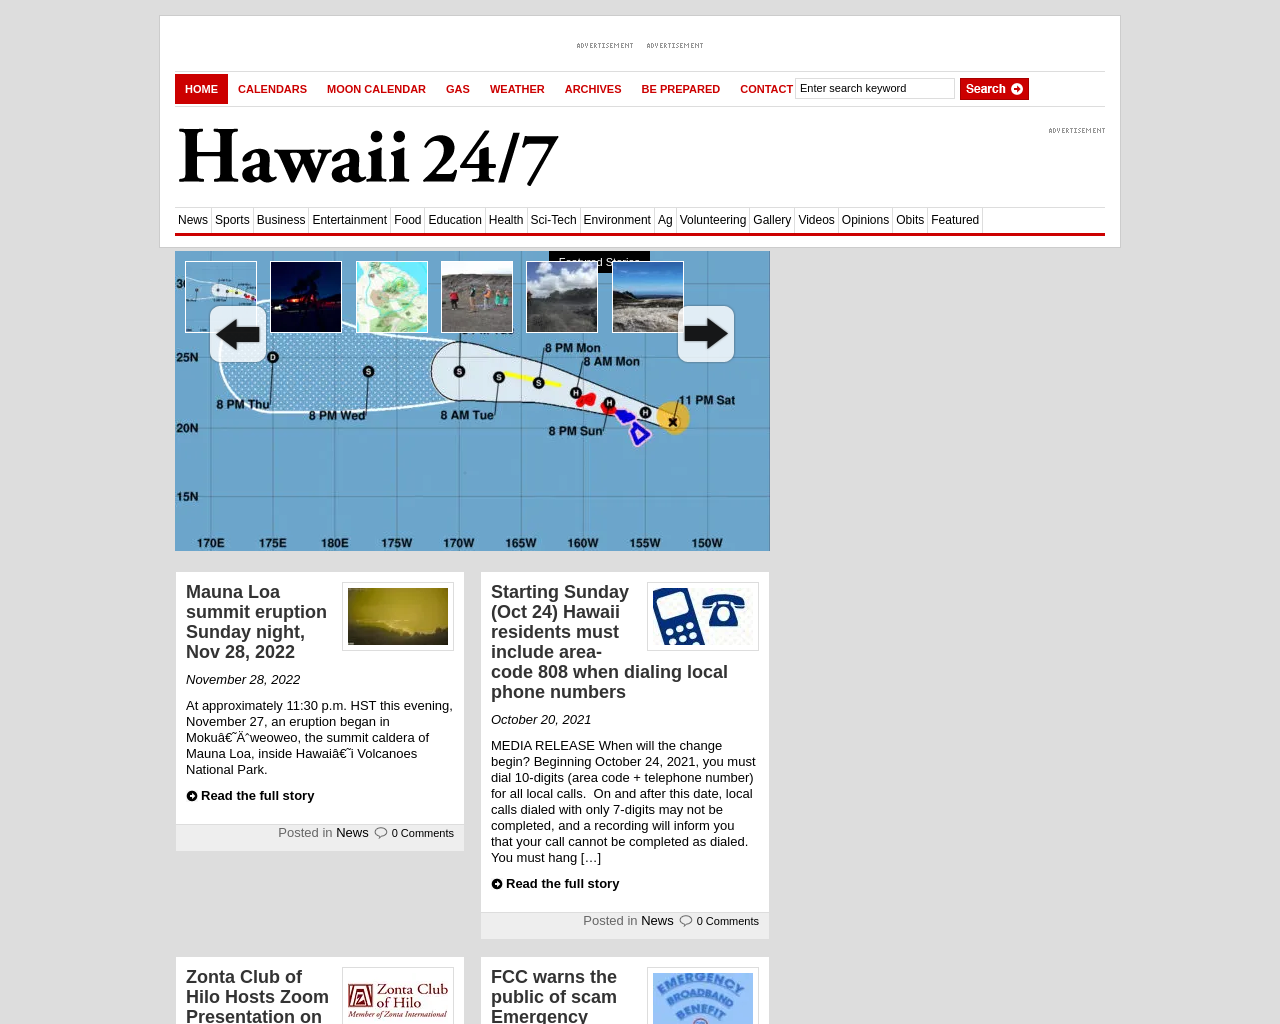 hawaii247.com